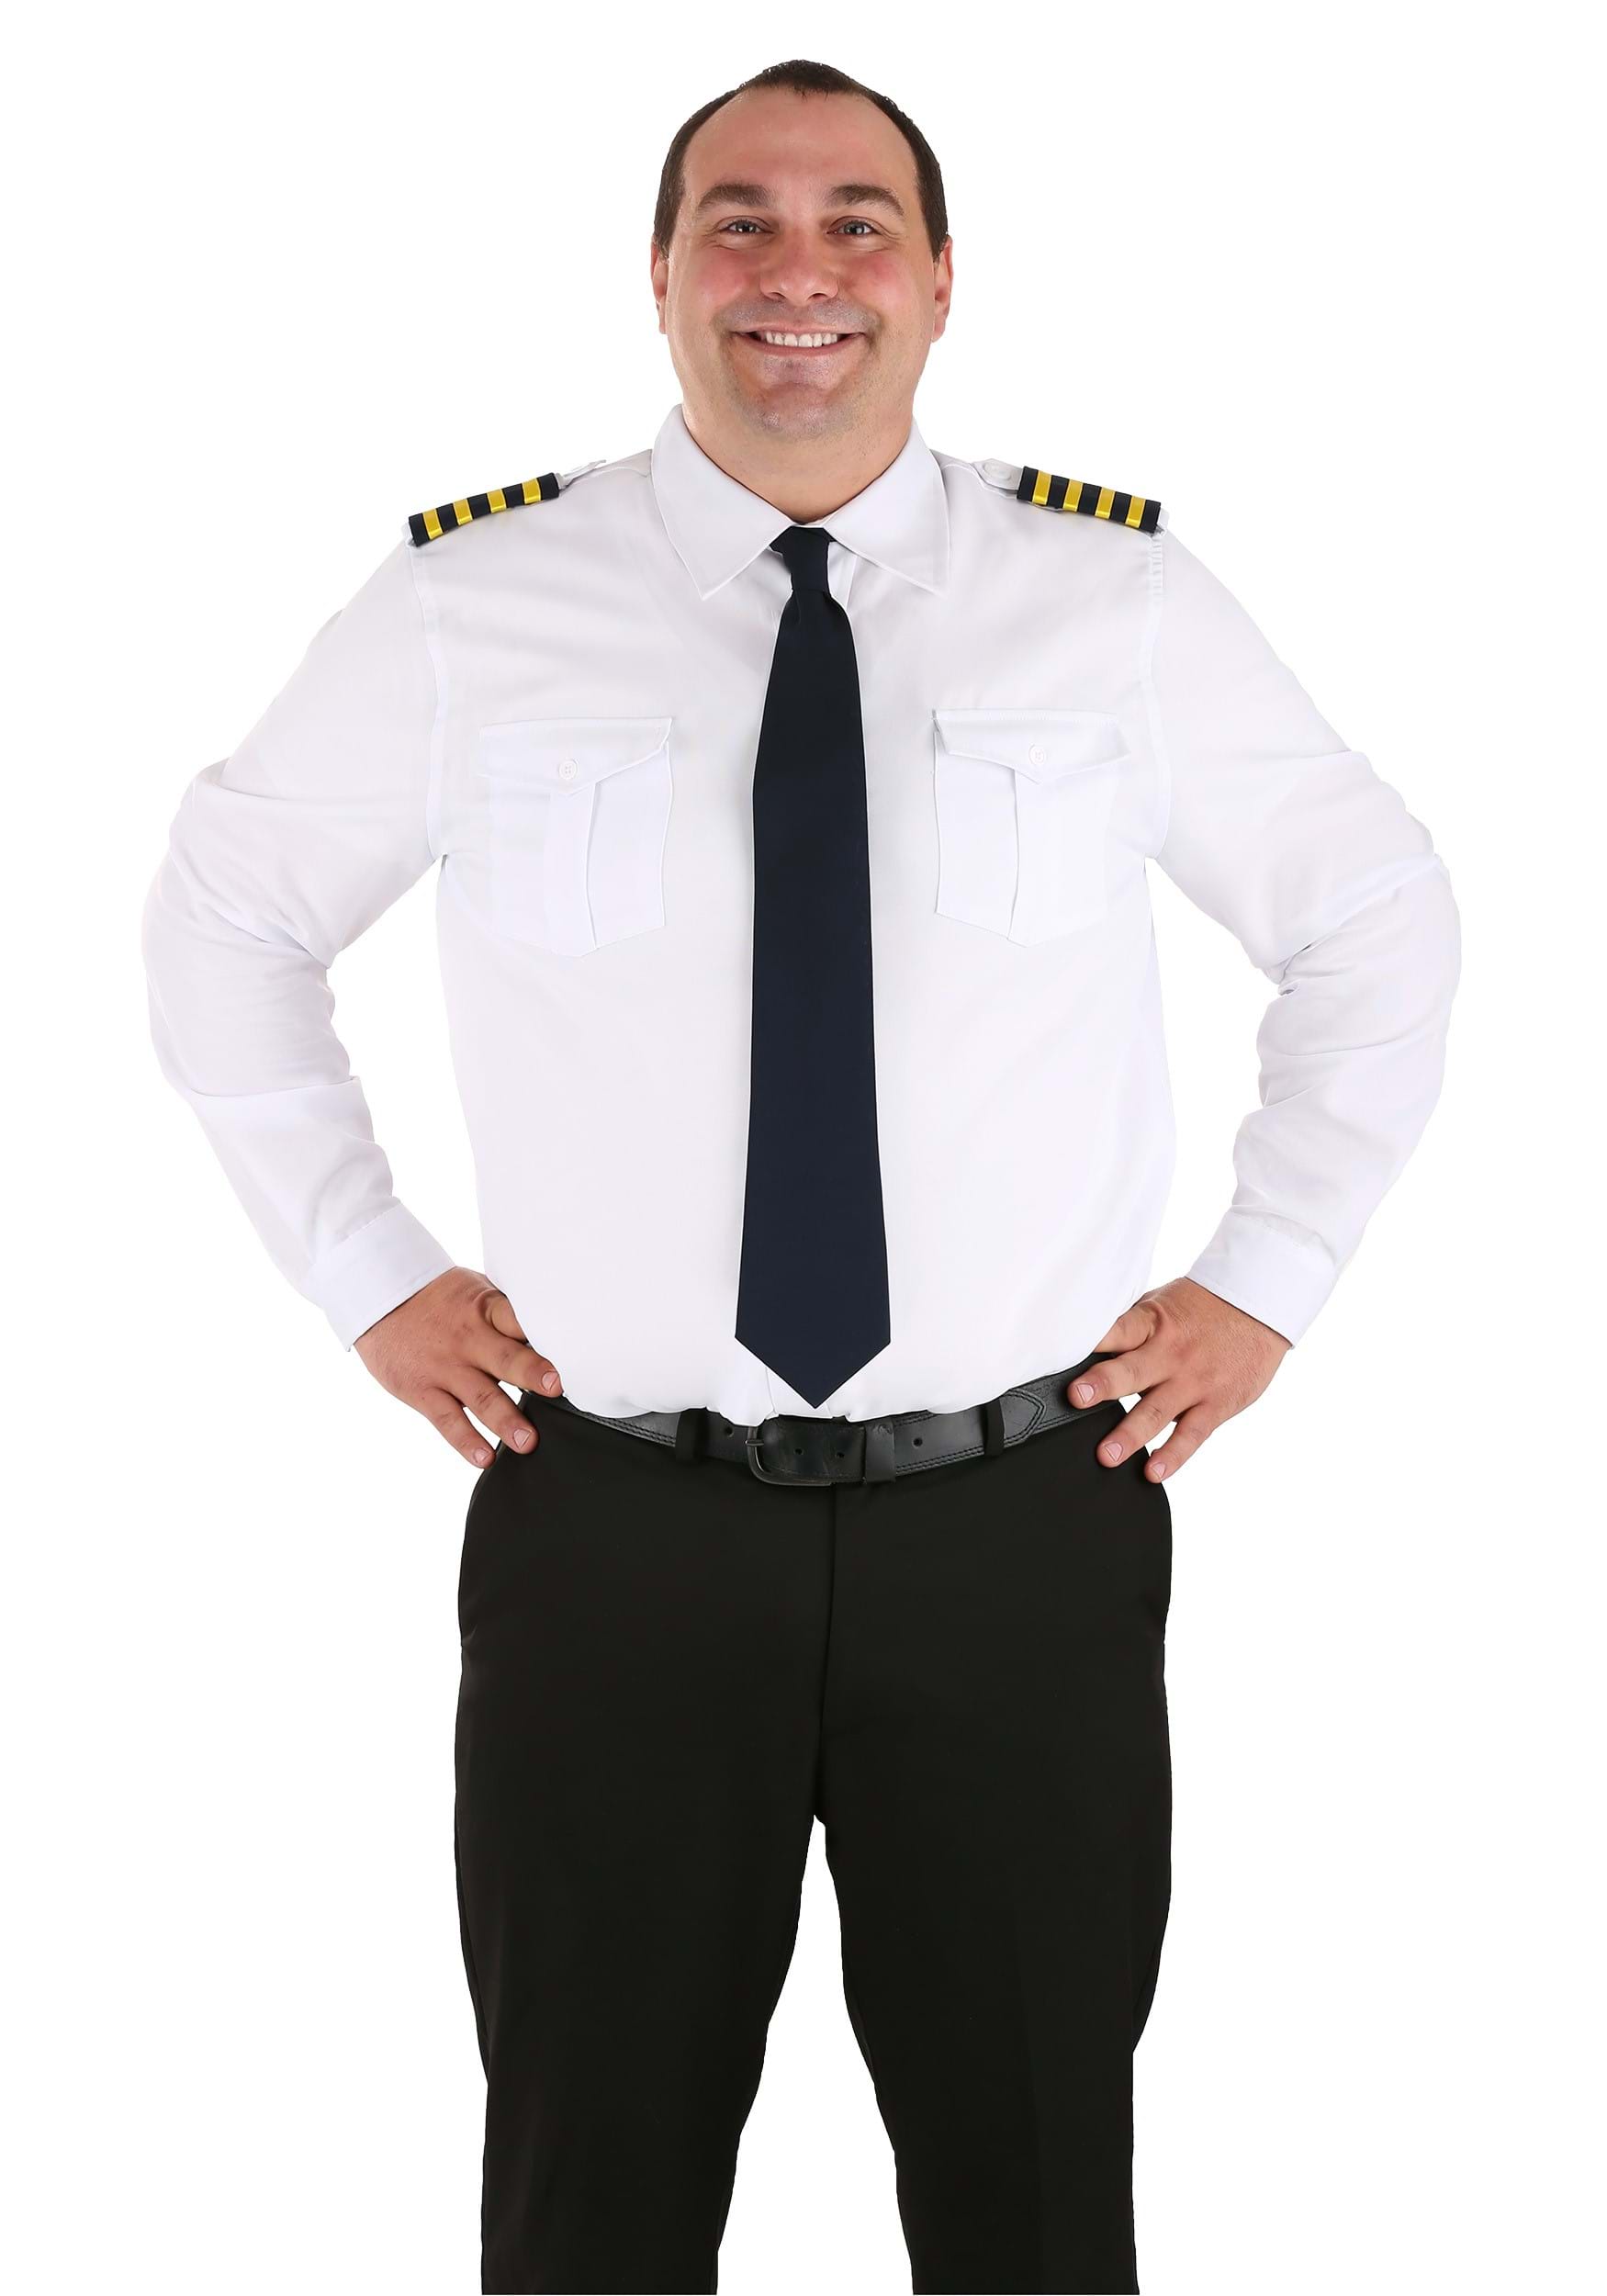 Plus Size Airline Pilot Adult Fancy Dress Costume Shirt